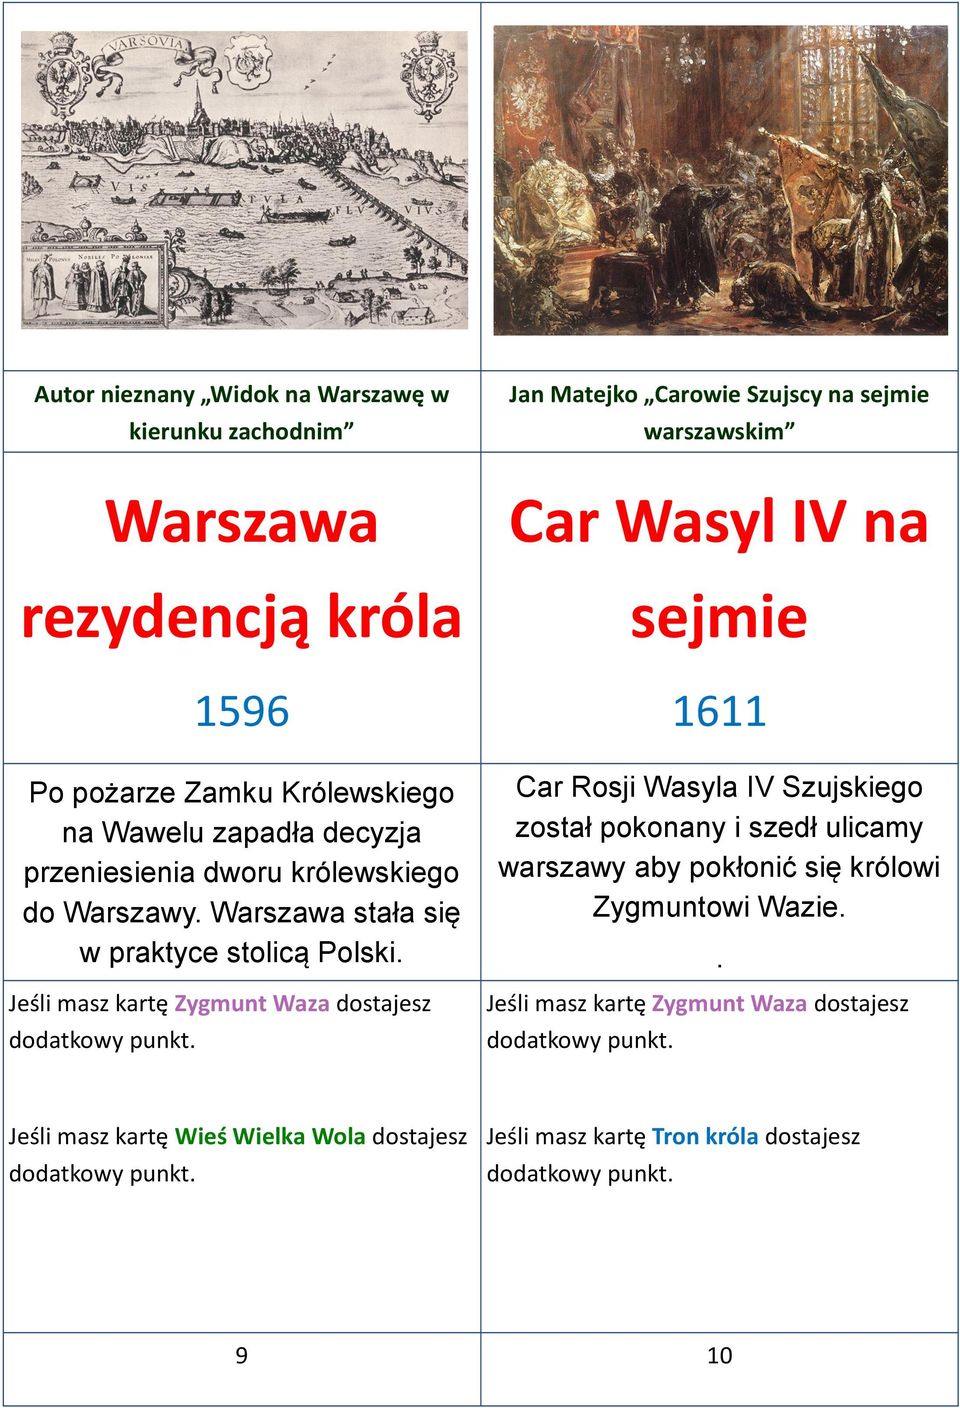 Jeśli masz kartę Zygmunt Waza dostajesz Car Wasyl IV na sejmie 1611 Car Rosji Wasyla IV Szujskiego został pokonany i szedł ulicamy warszawy aby